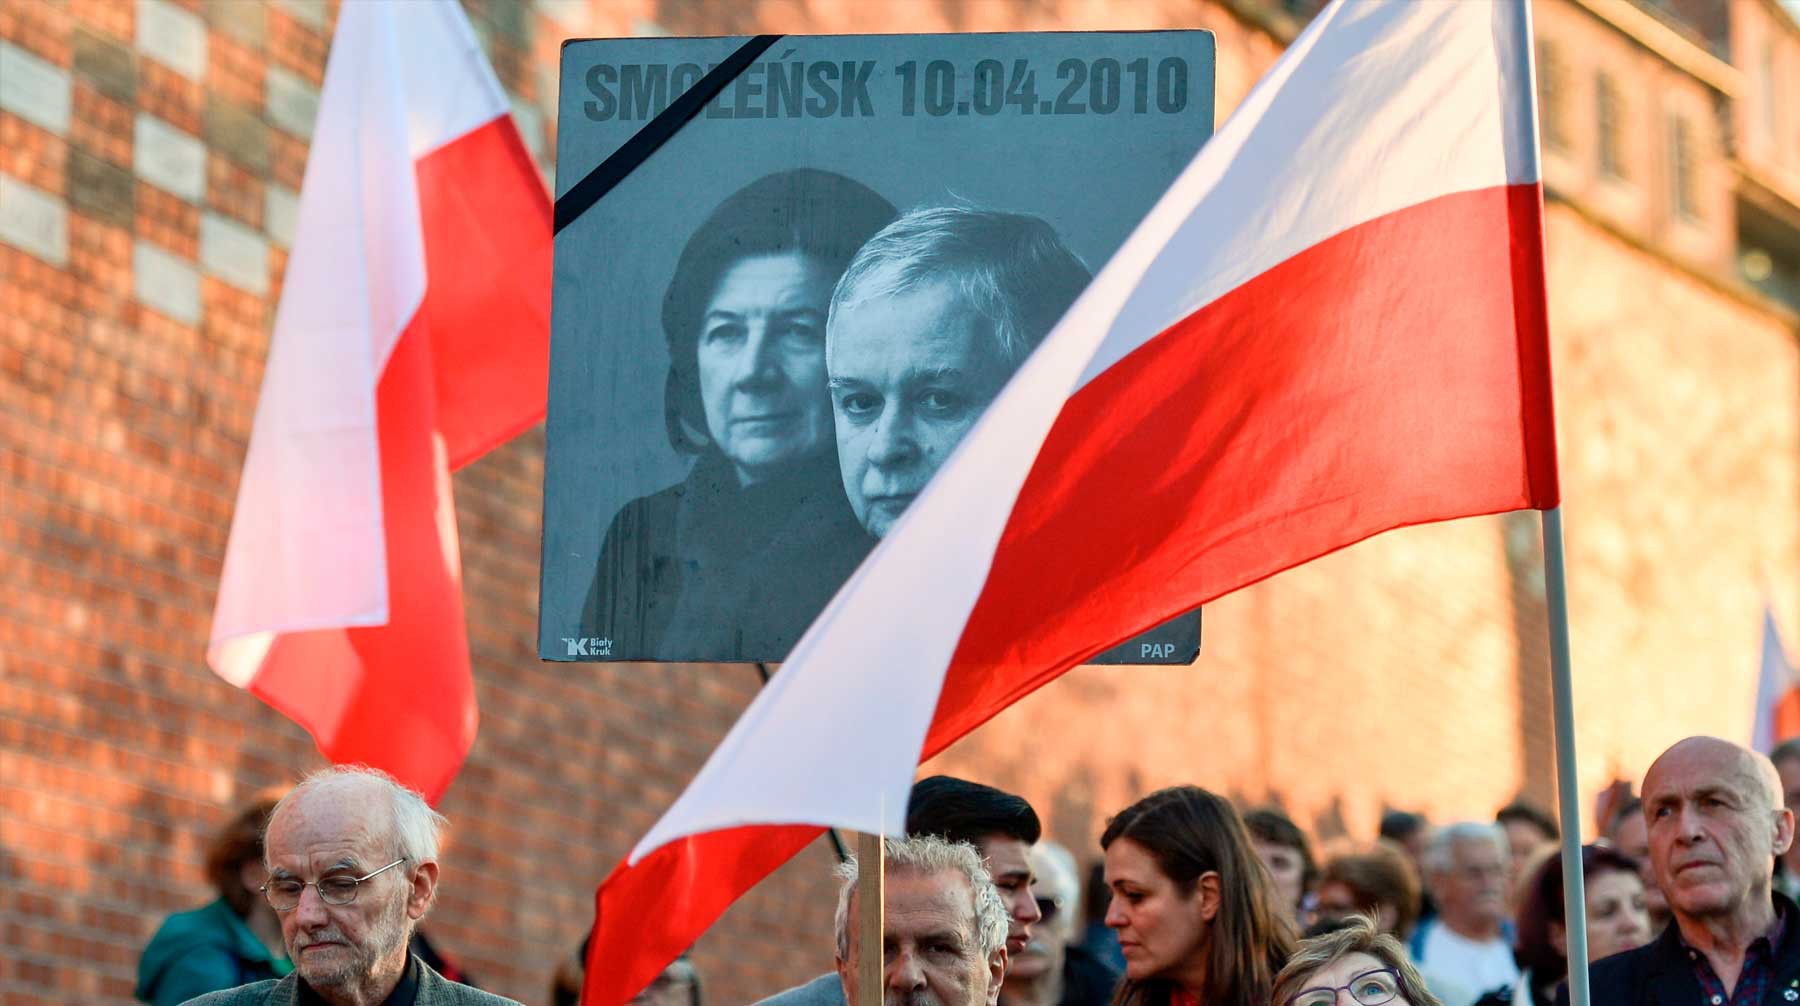 Dailystorm - Польша потребовала ареста диспетчеров, работавших с упавшим Ту-154 Качиньского